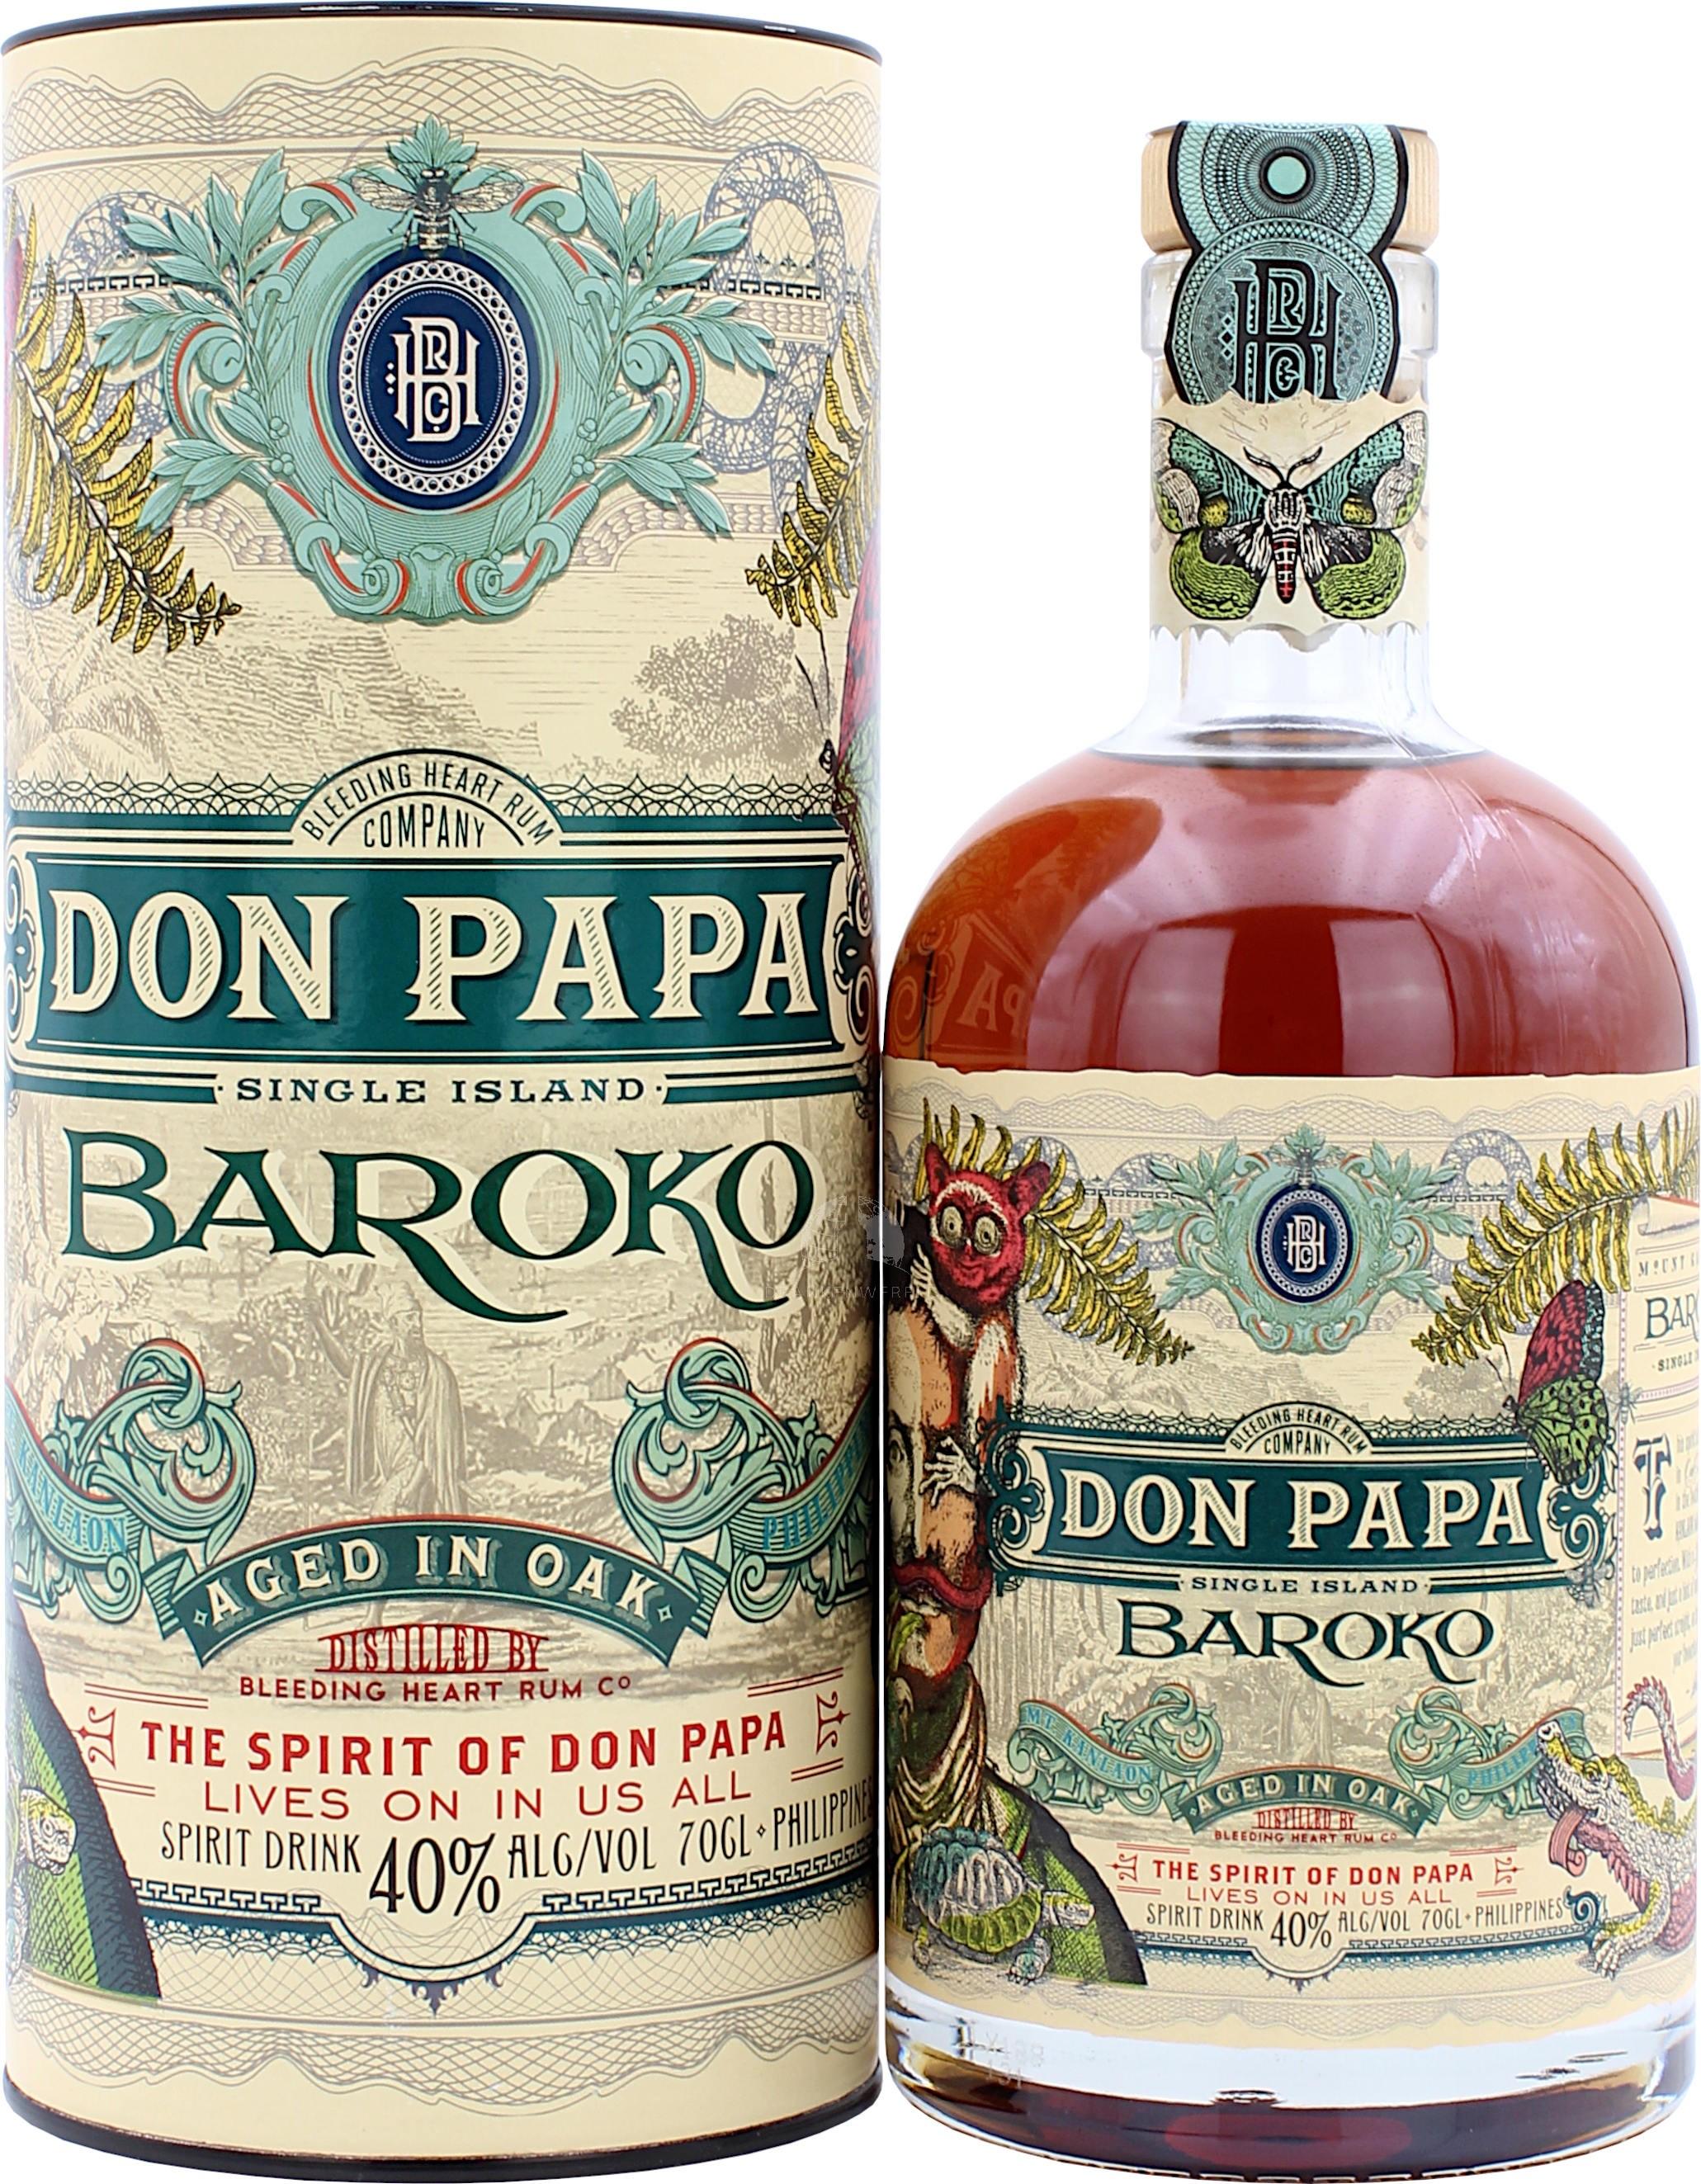 Don Papa Baroko + flask, don papa baroko 